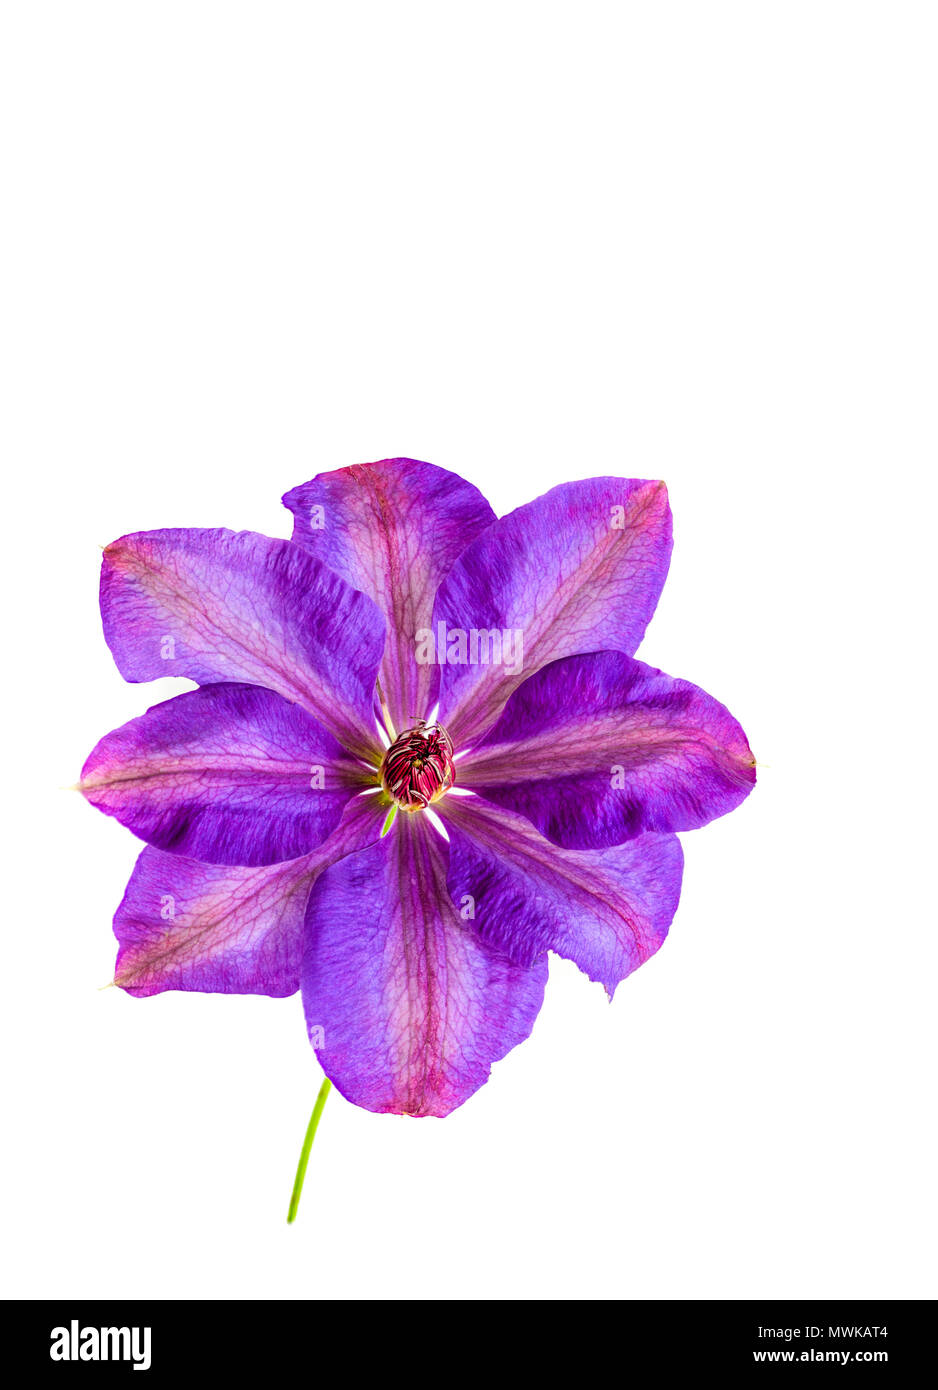 Acht Blütenblatt violett gefärbt Blume von einem Clematis Elsa Spath Kletterpflanze. Stockfoto